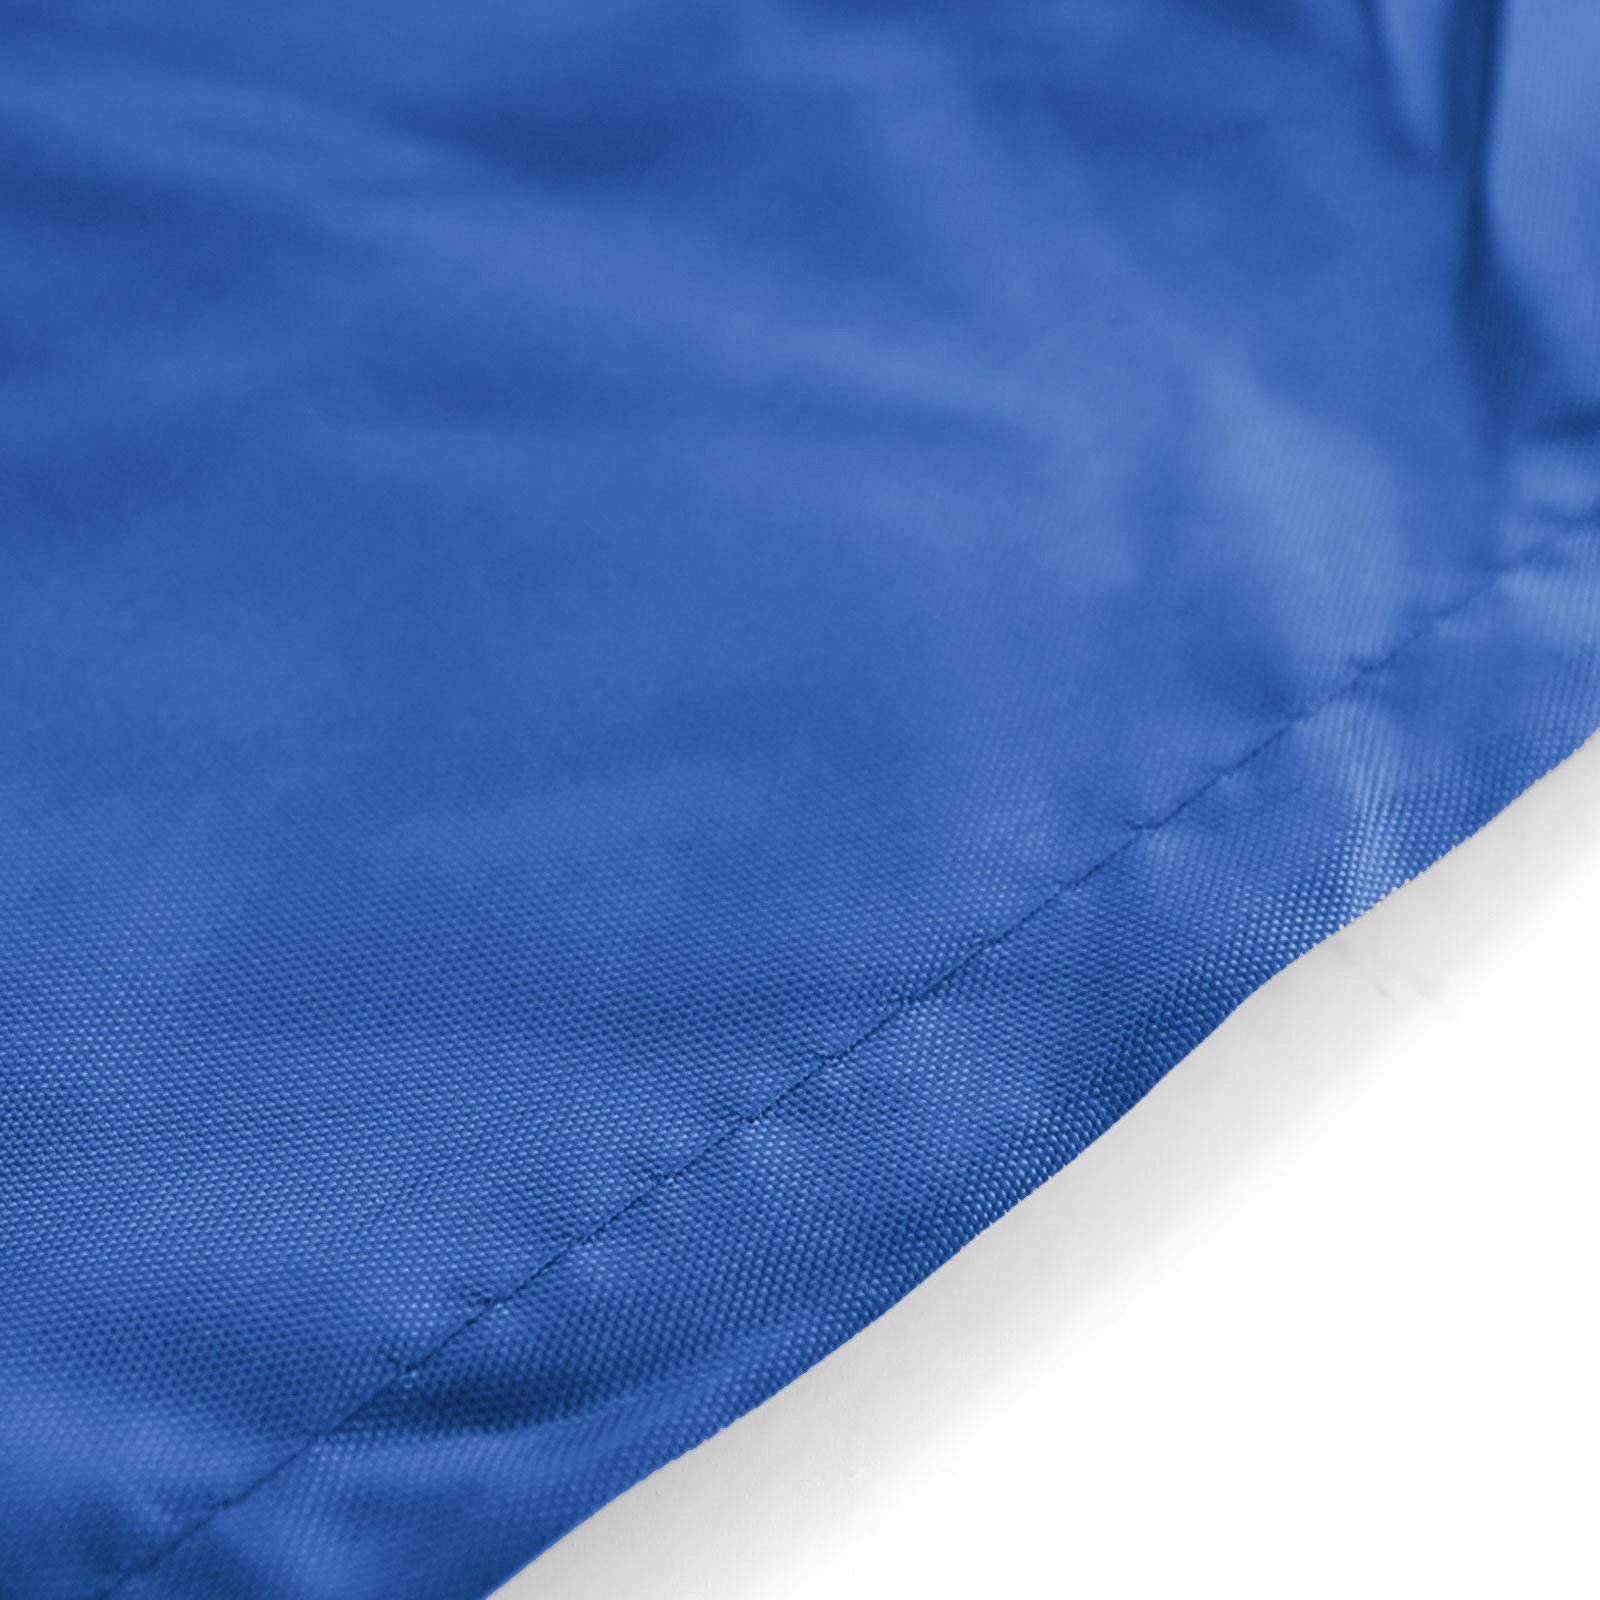 RAMROXX Hängesessel Premium Schutzabdeckung Schutzhülle 190x100cm Hängesessel für Cover Blau